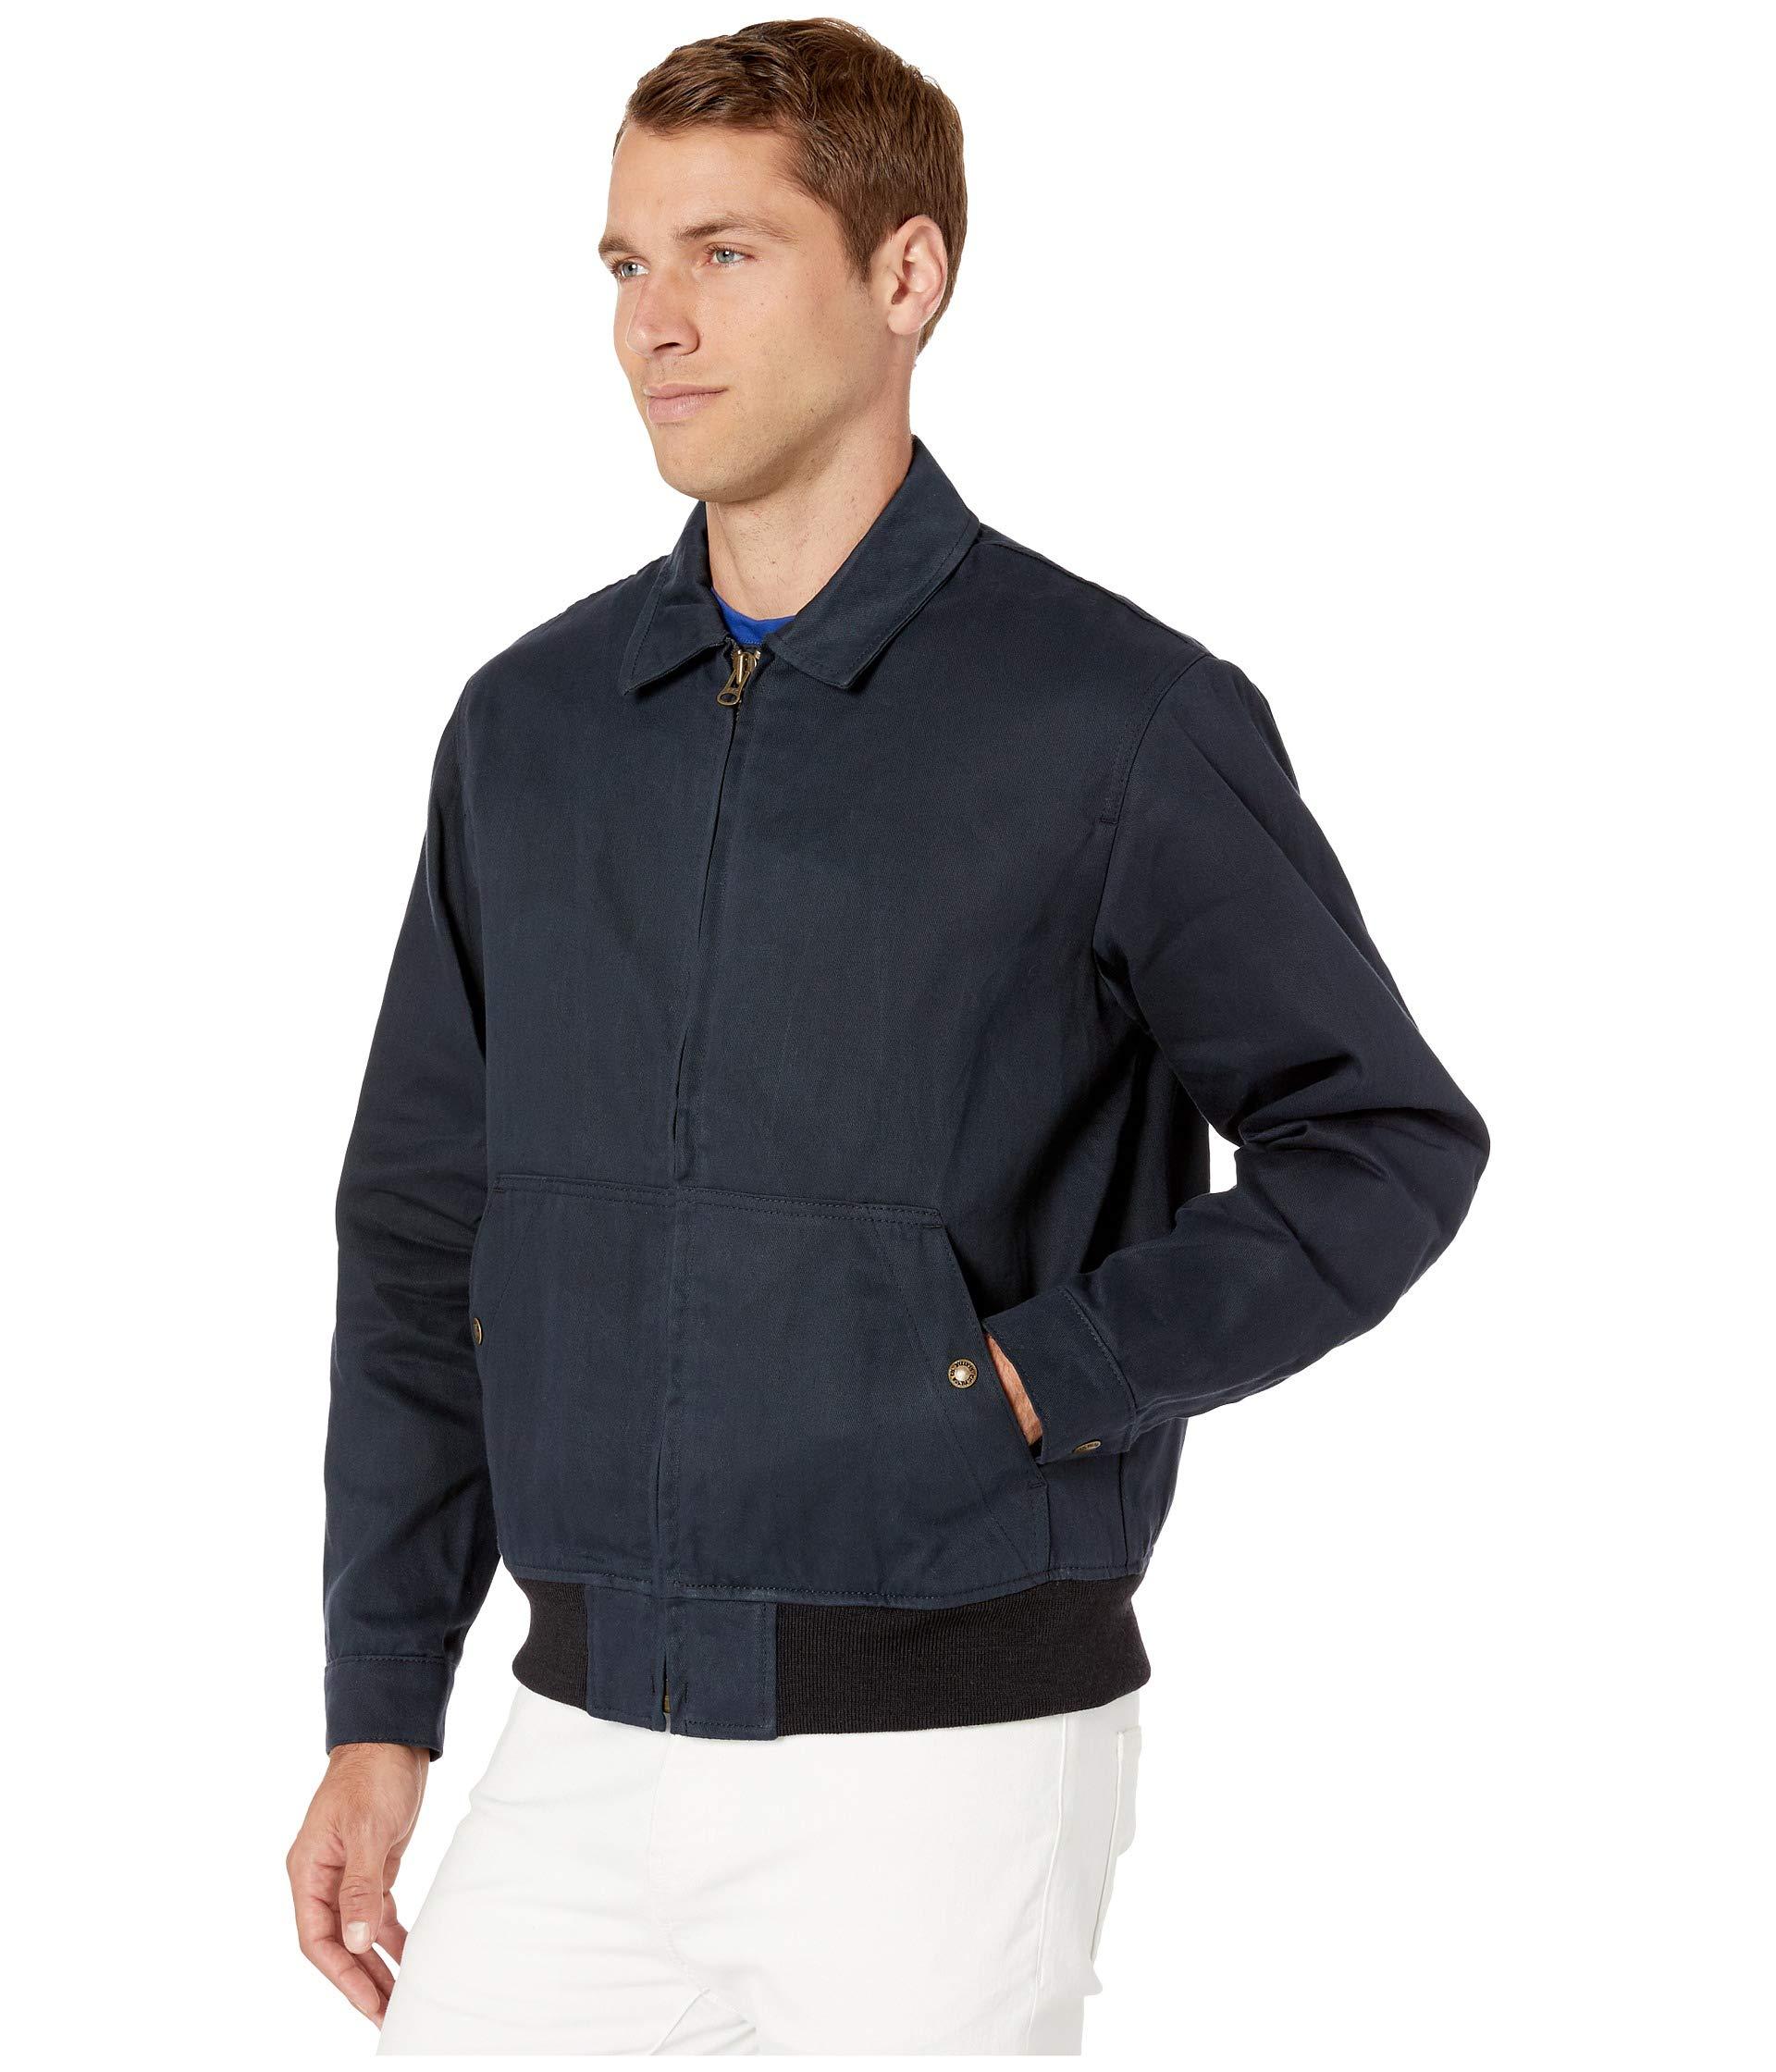 Filson Wool Dry Wax Work Jacket in Black for Men - Lyst